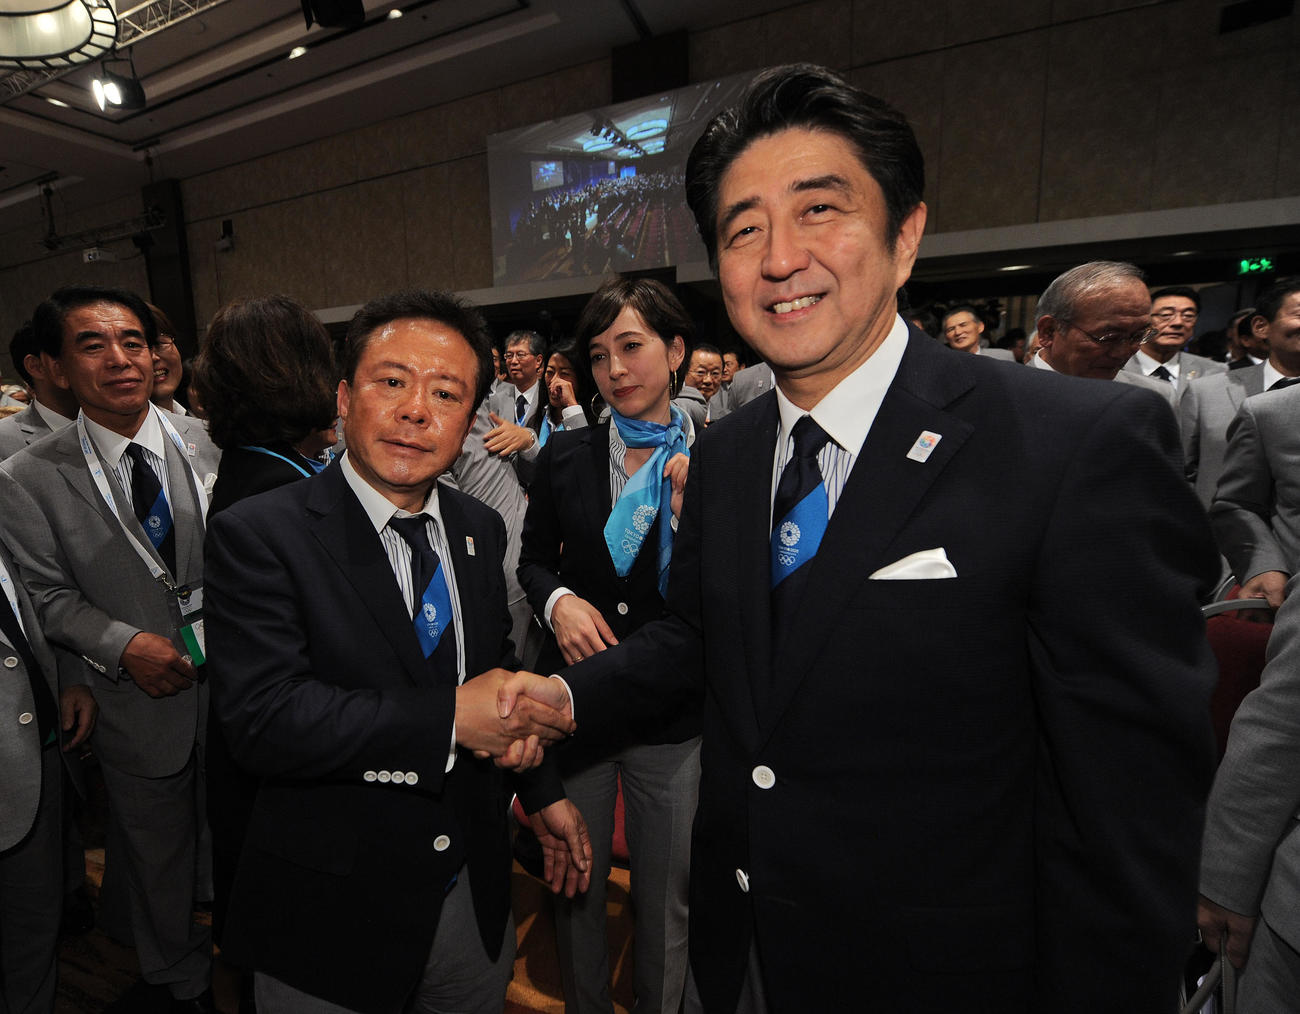 五輪開催地が東京に決まったことを受け、ガッチリ握手をかわす安倍首相と猪瀬知事（撮影・菅敏）